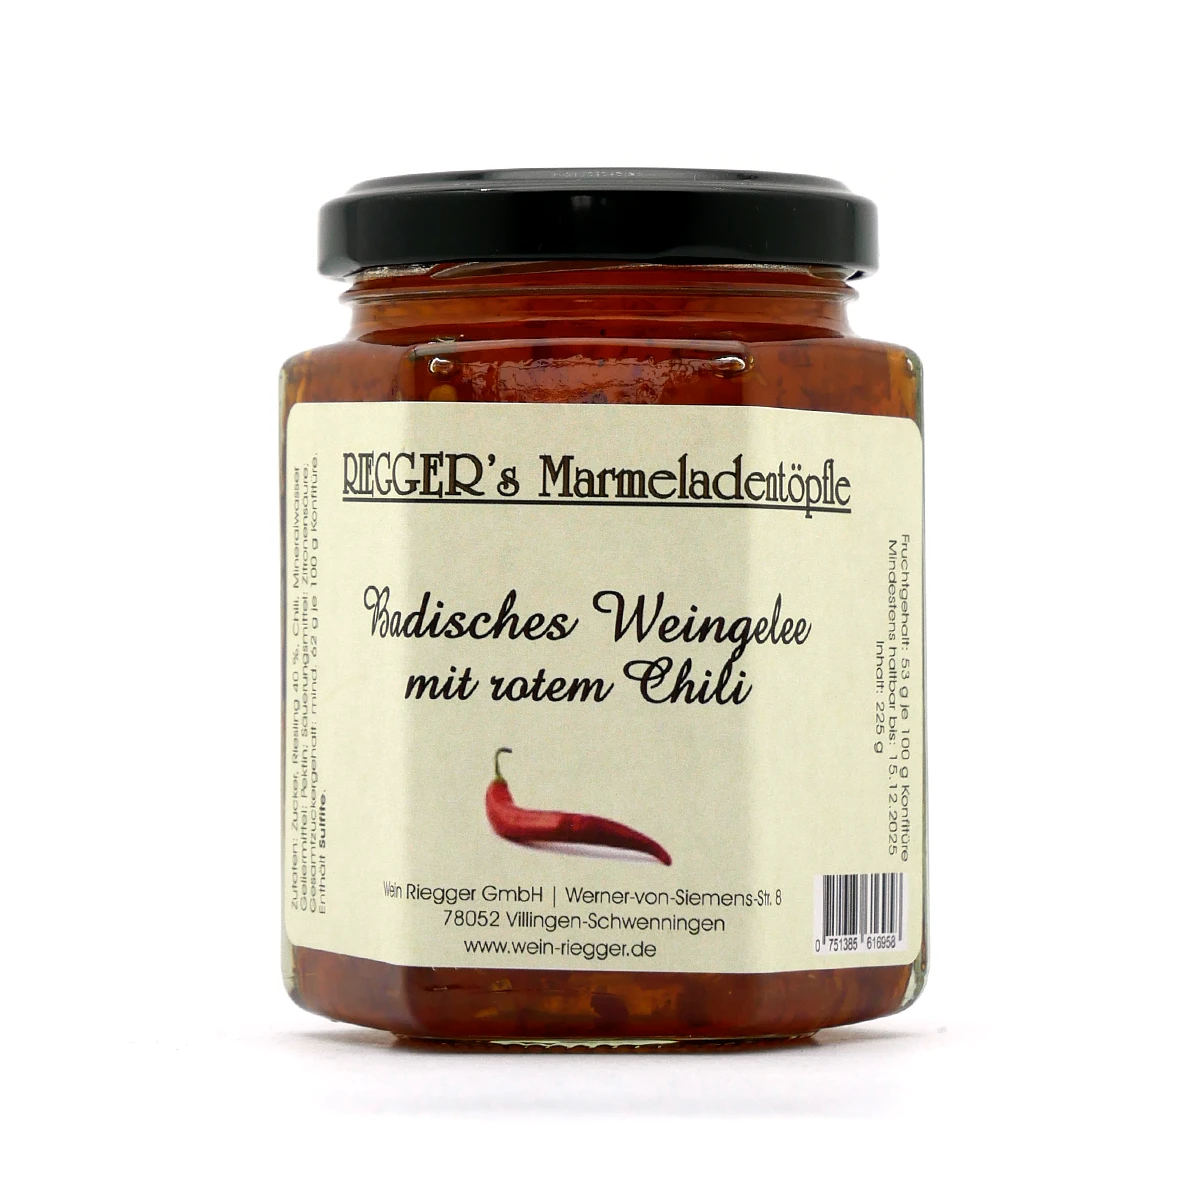 BADISCHES WEINGELEE - Riegger's Marmeladentöpfle